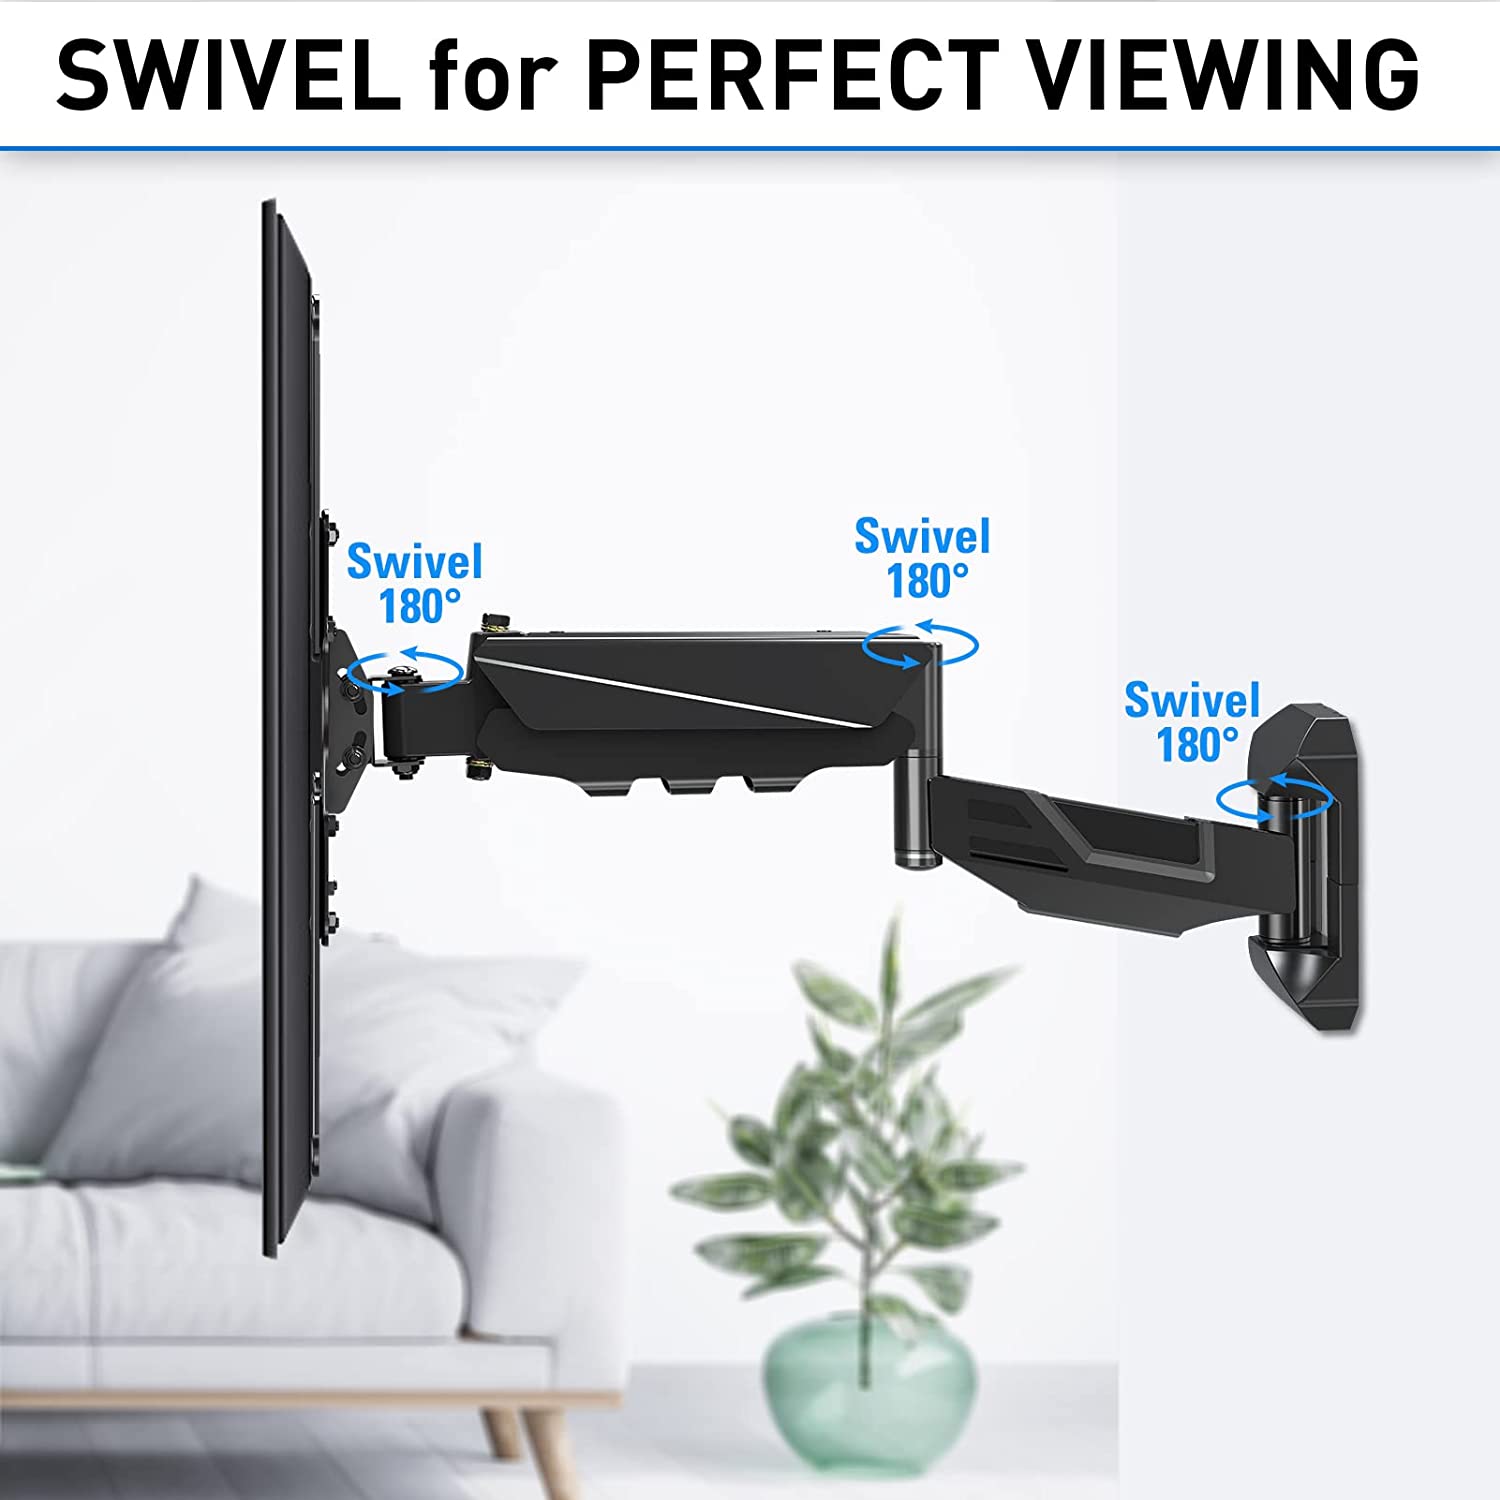 swivel mount for TV